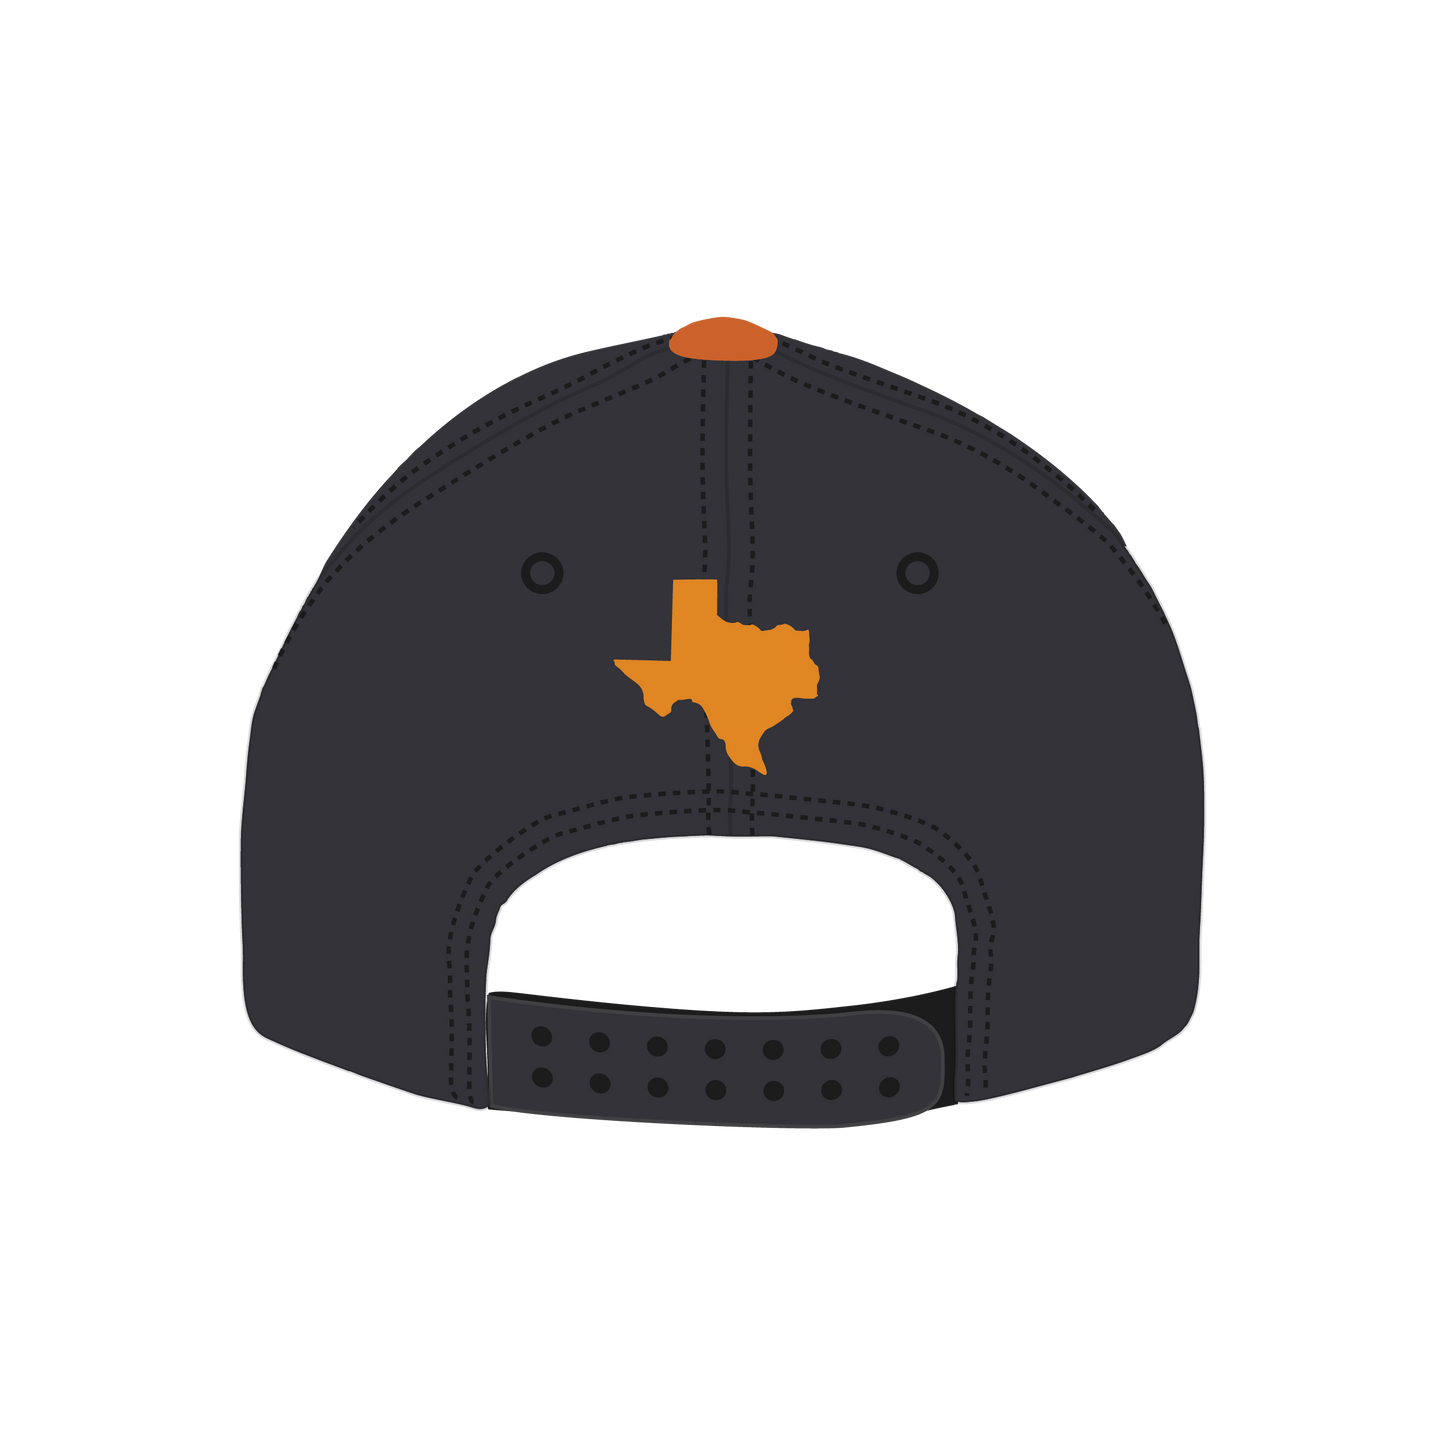 Texas Team - Team logo hat